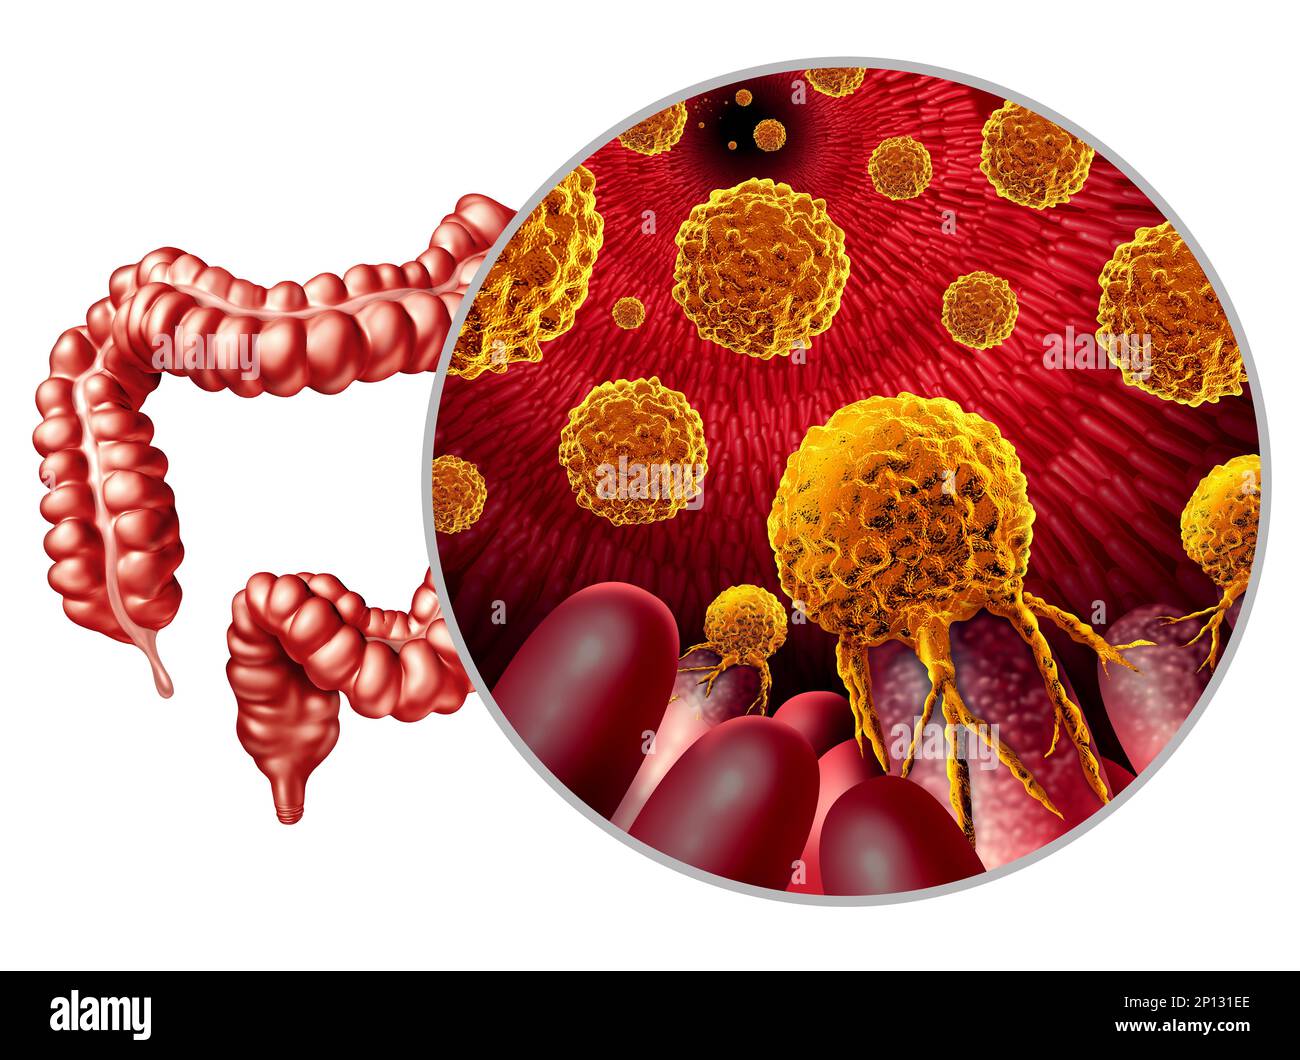 Crescita del cancro del colon o concetto di tumore maligno del colon come illustrazione medica di un intestino crasso con una malattia cancerogena metastatica Foto Stock